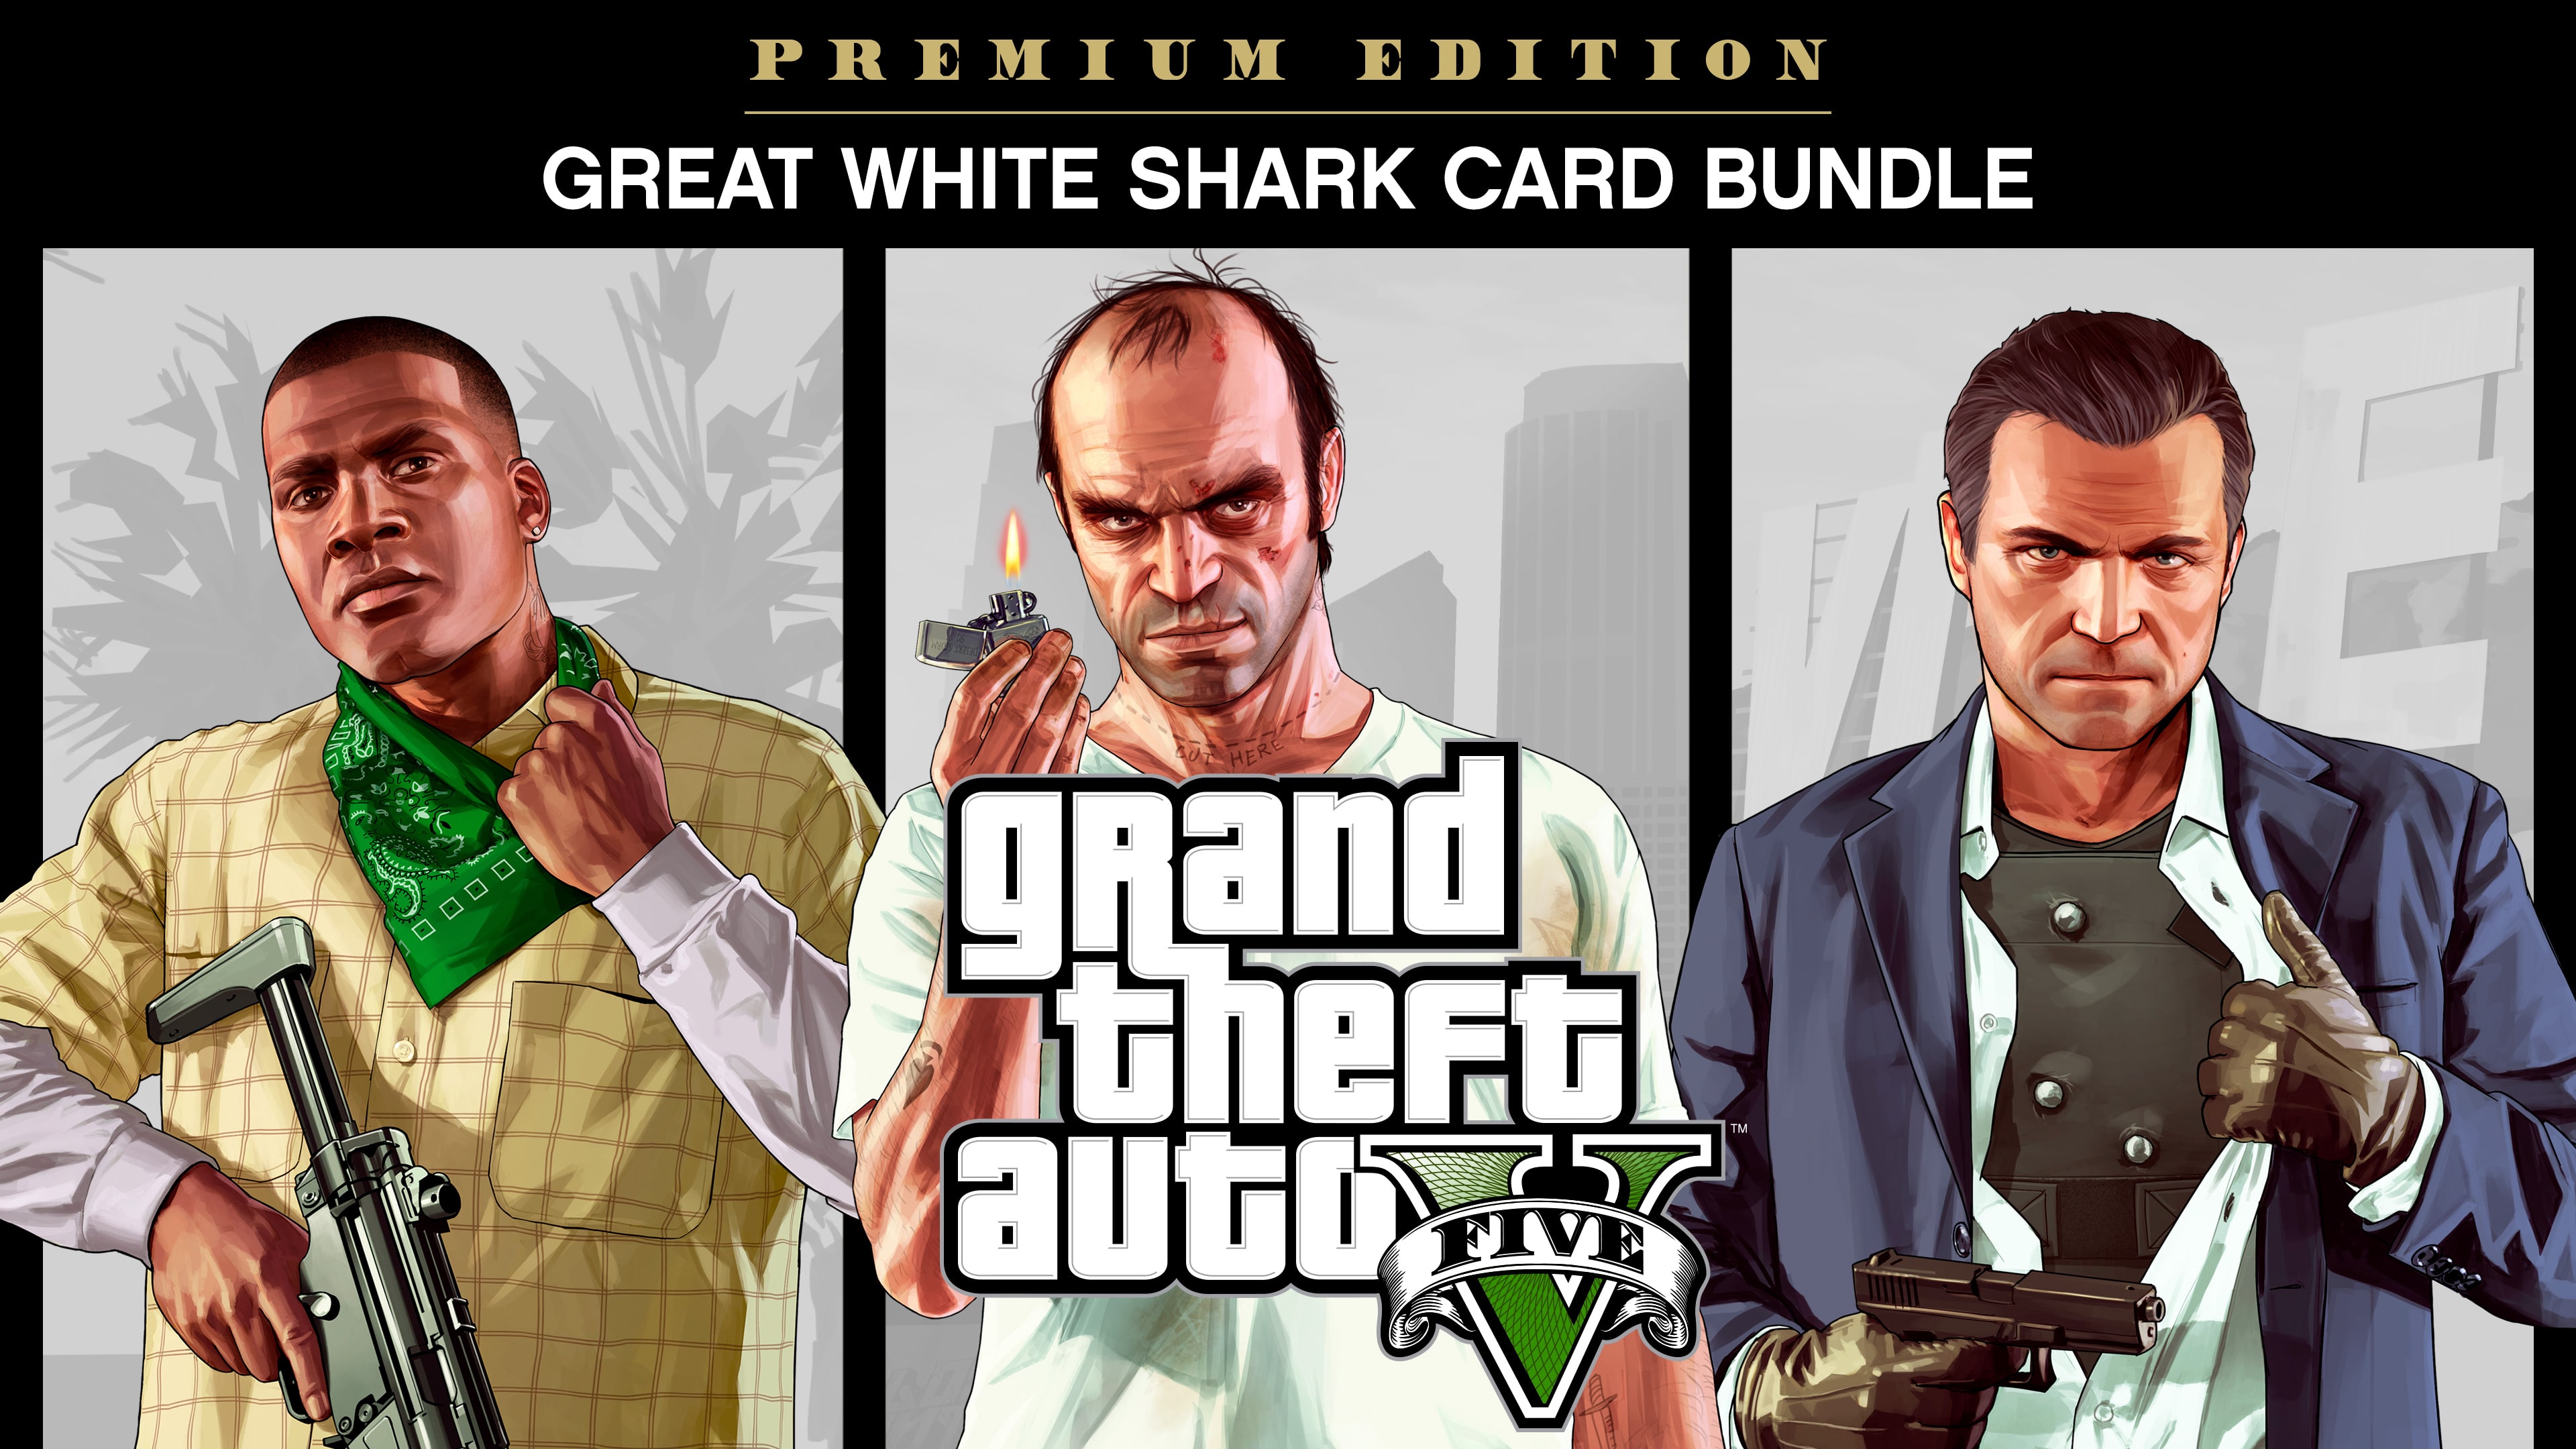 Комплект «Grand Theft Auto V: Premium Edition и платежная карта «Белая акула»